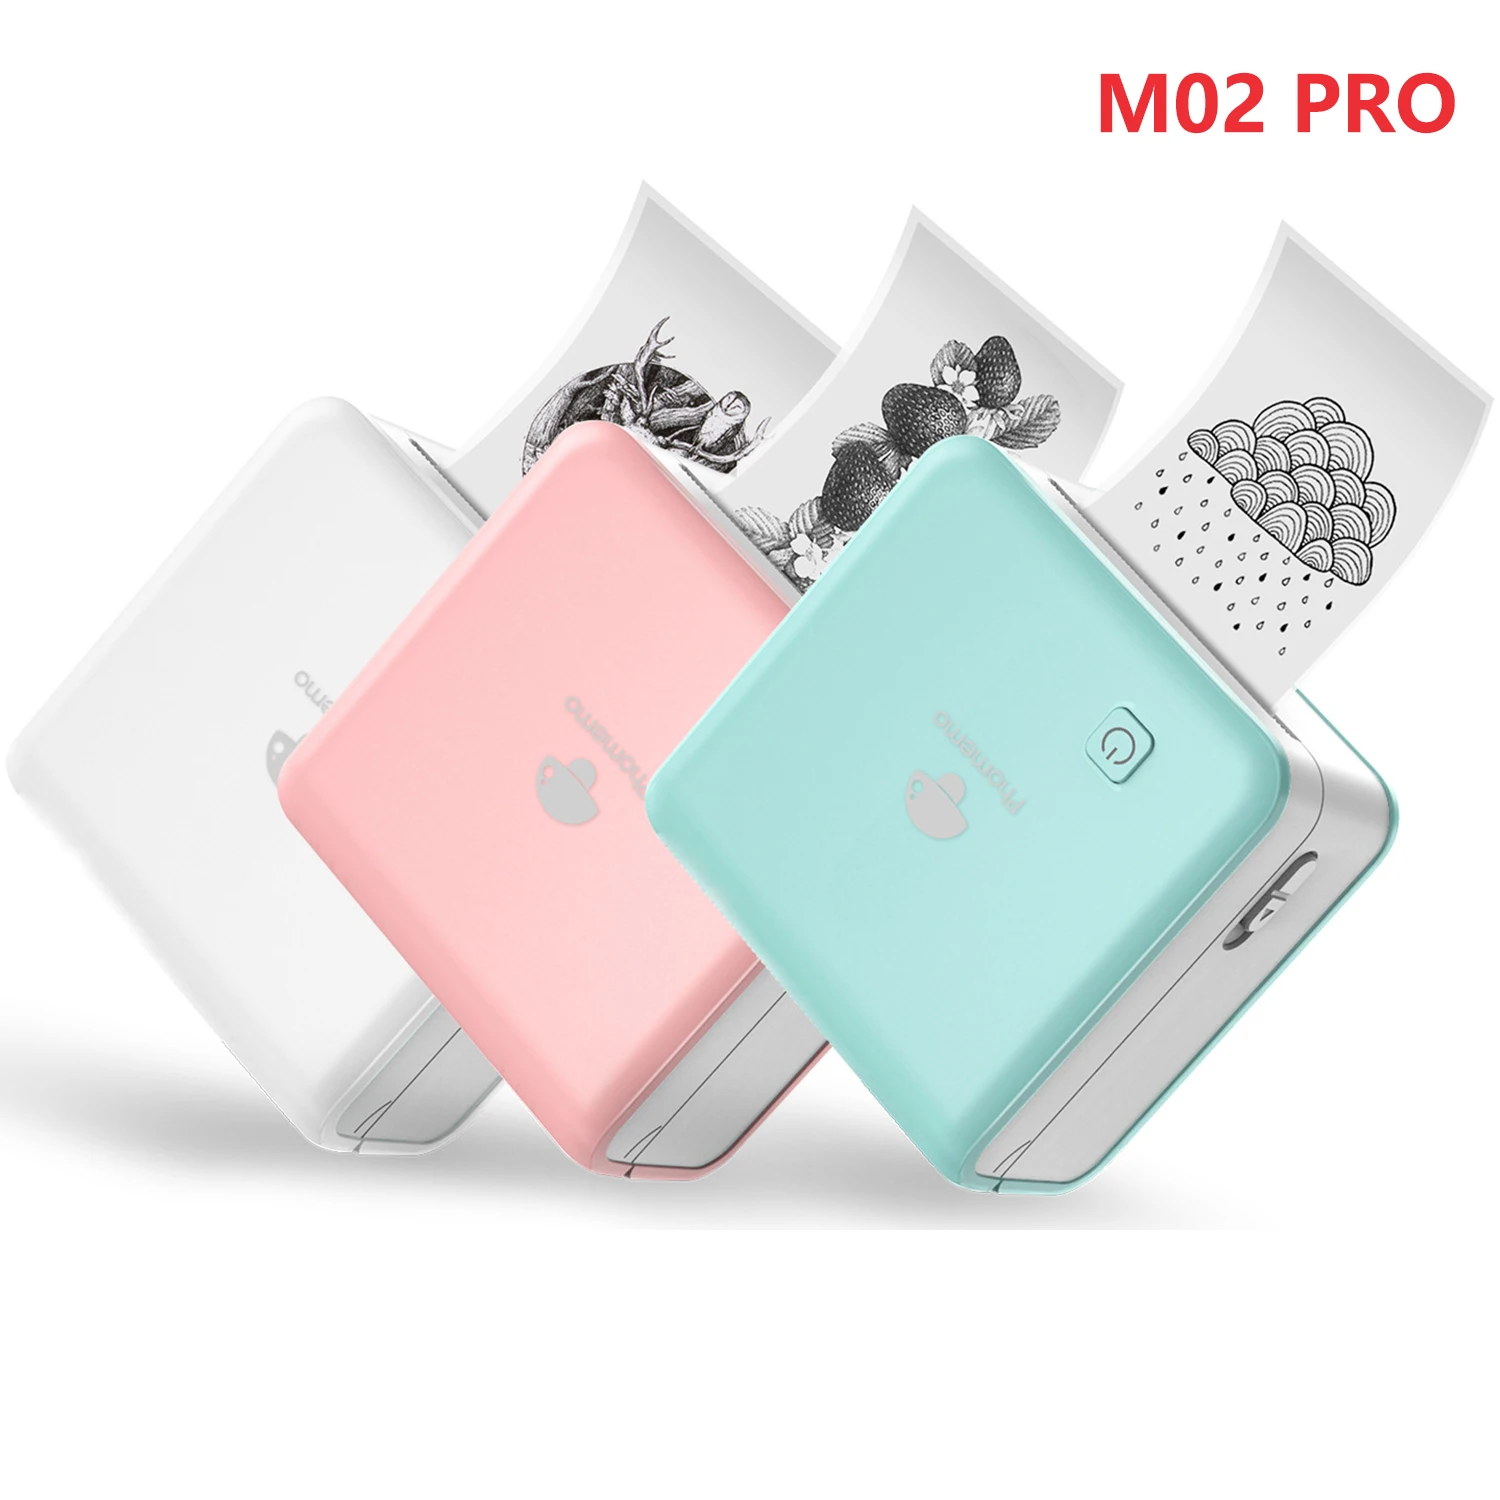 Phomemo M02 Pro 300dpi Mini Imprimante Portable Bluetooth Photo